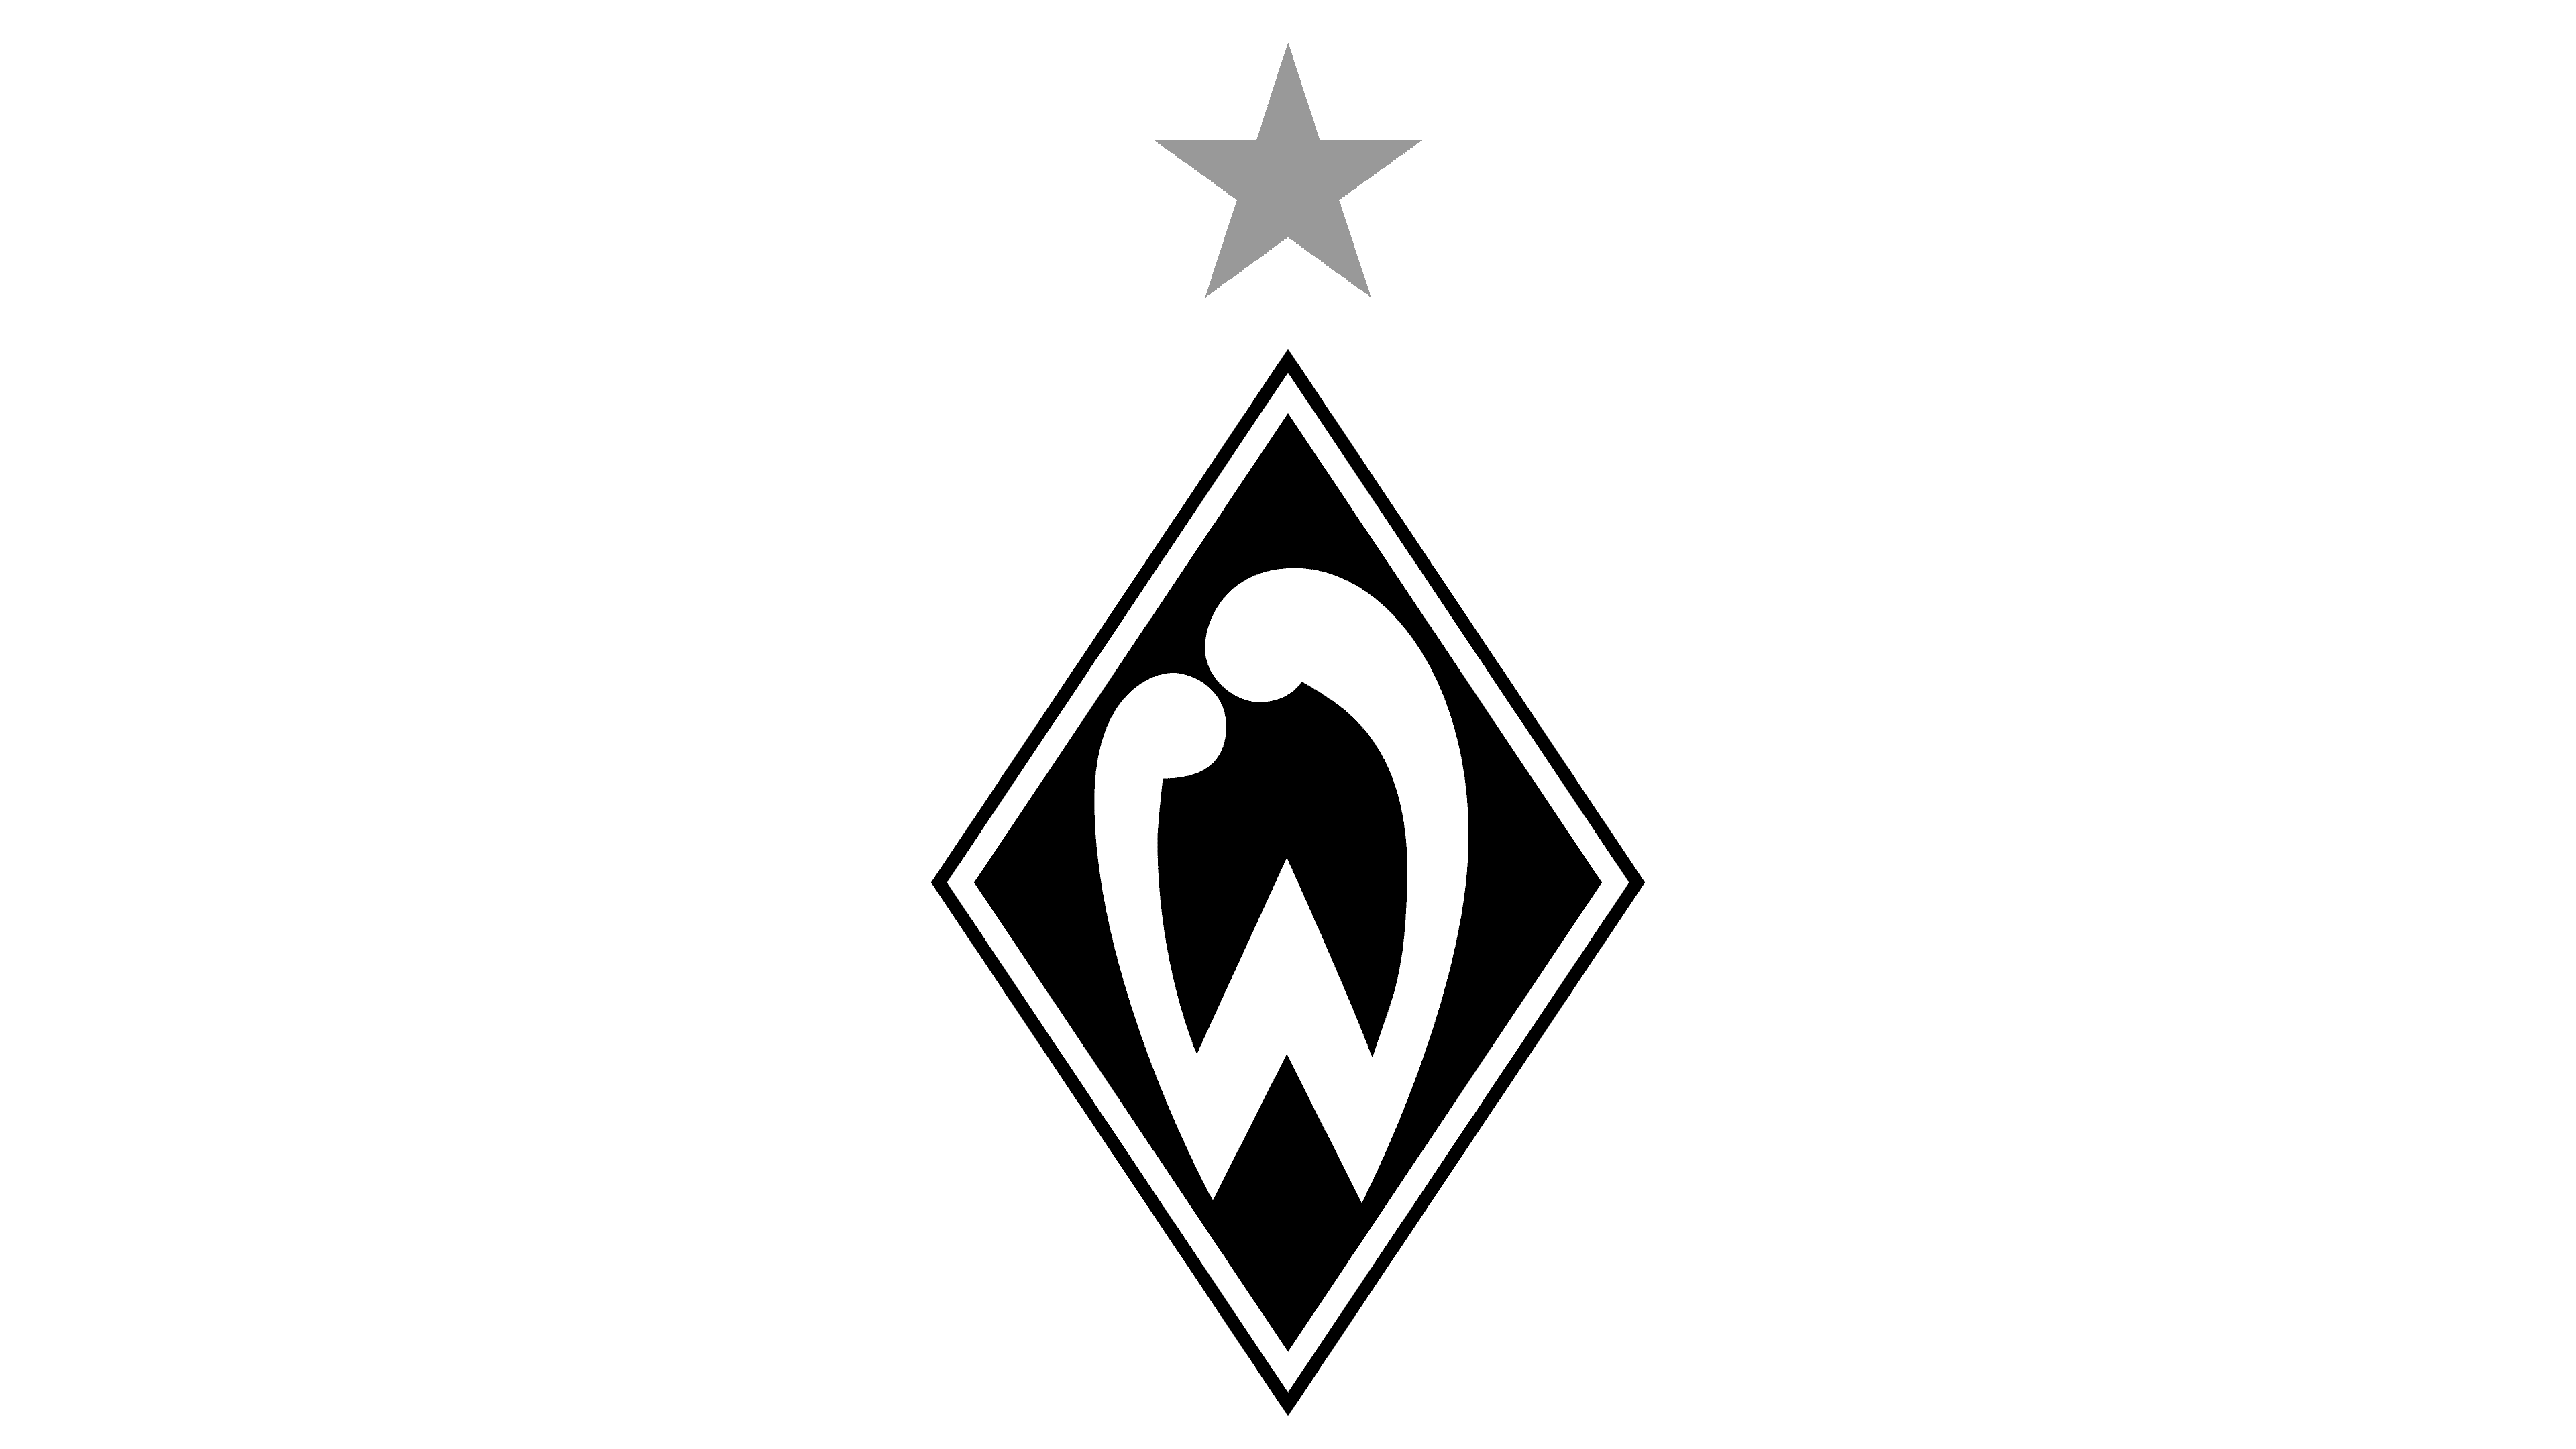 SV Werder Bremen Pin Logo 2016-2017 Original Maße 12x17mm 